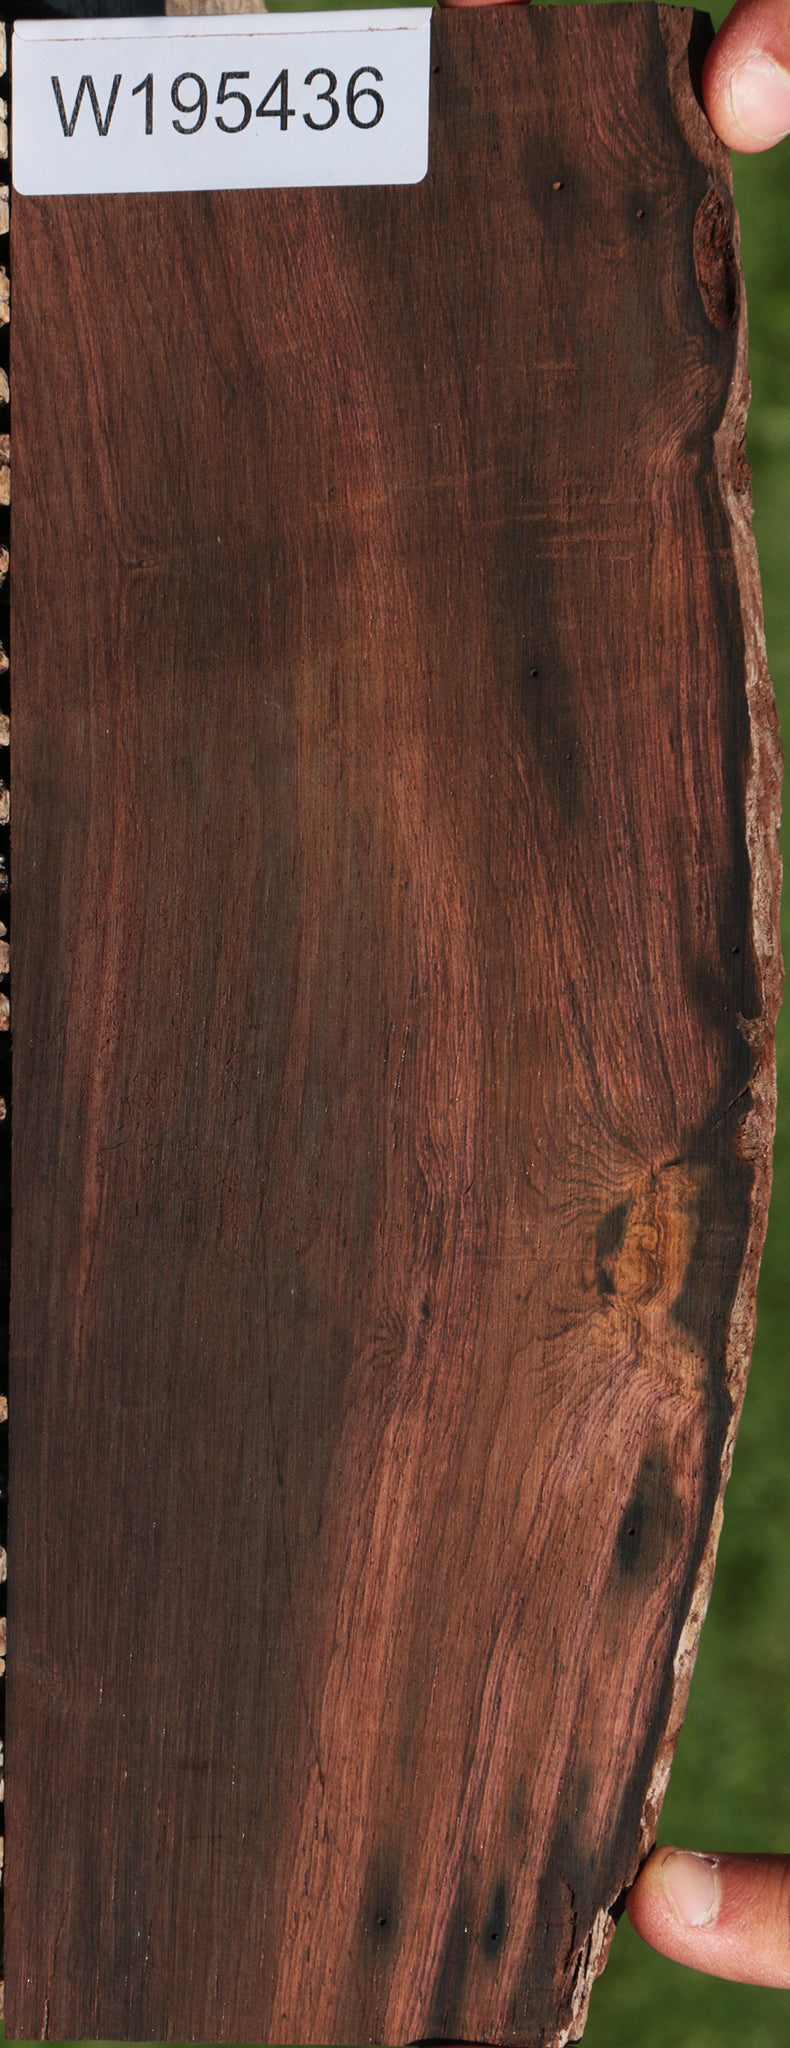 Brazilian Rosewood Live Edge Micro Lumber